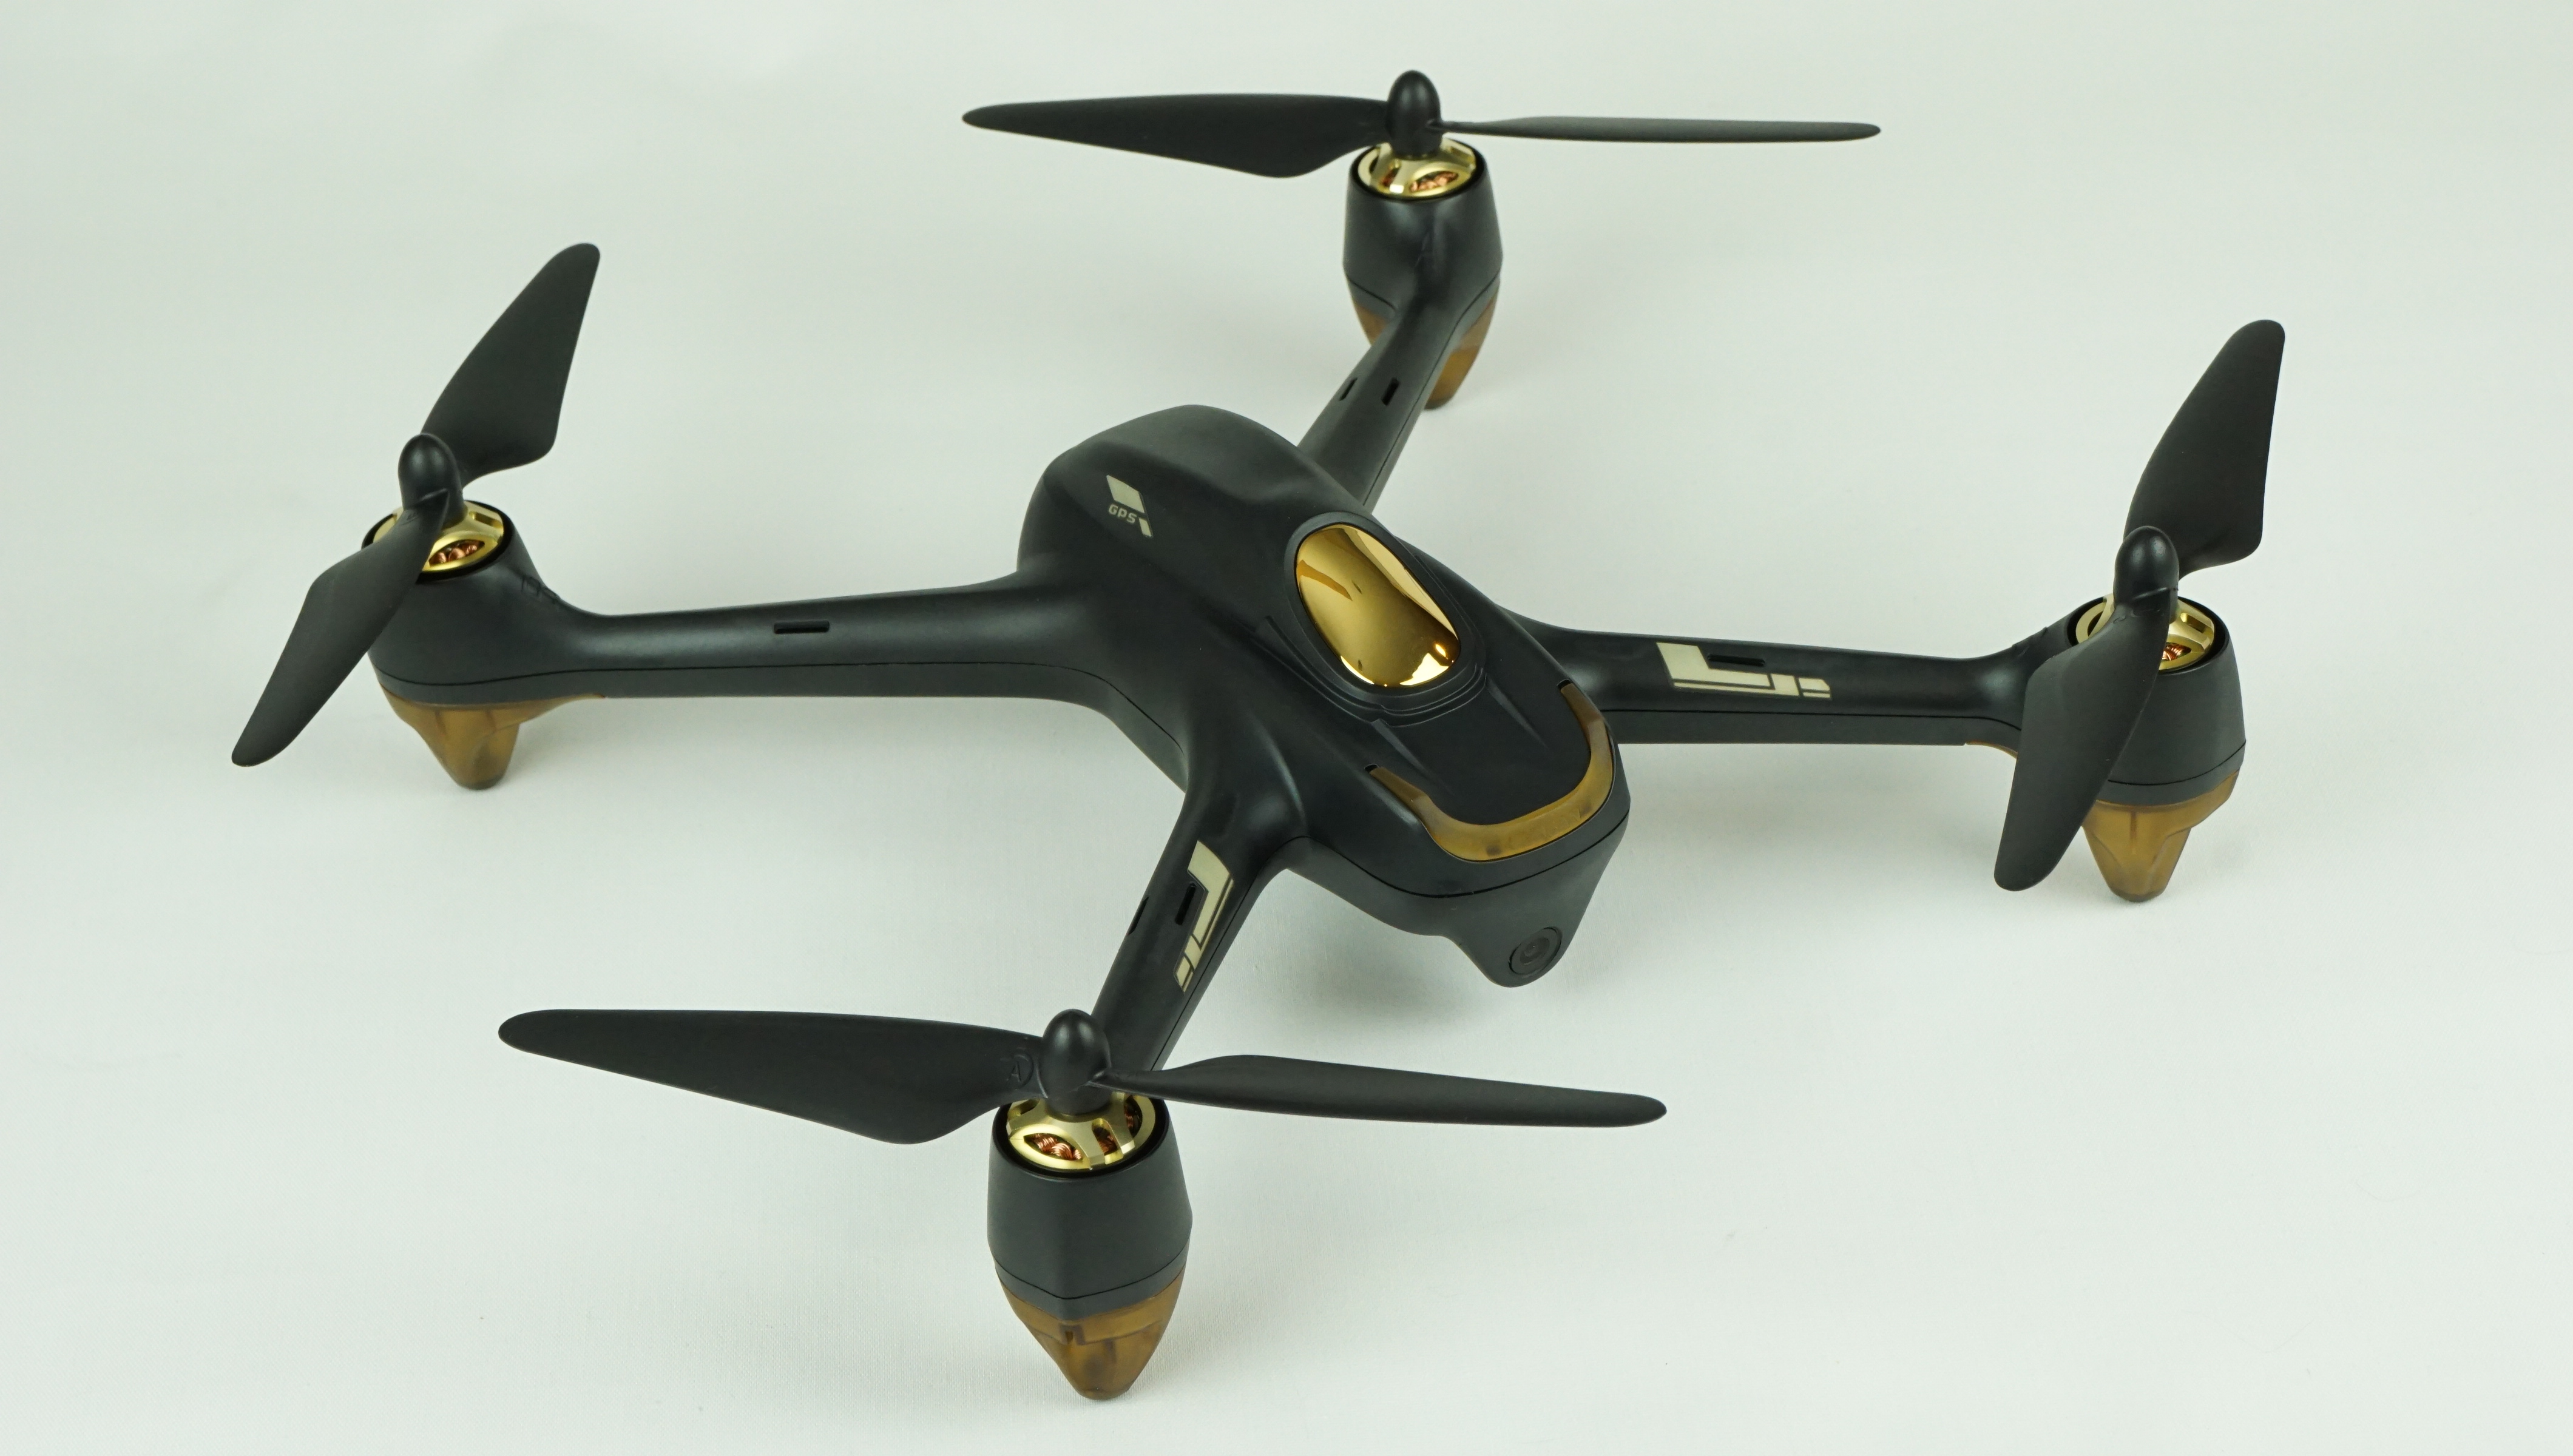 spur suspend belt Hubsan H501S: Is It the Best sub-$200 GPS Drone? - Half Chrome Drones